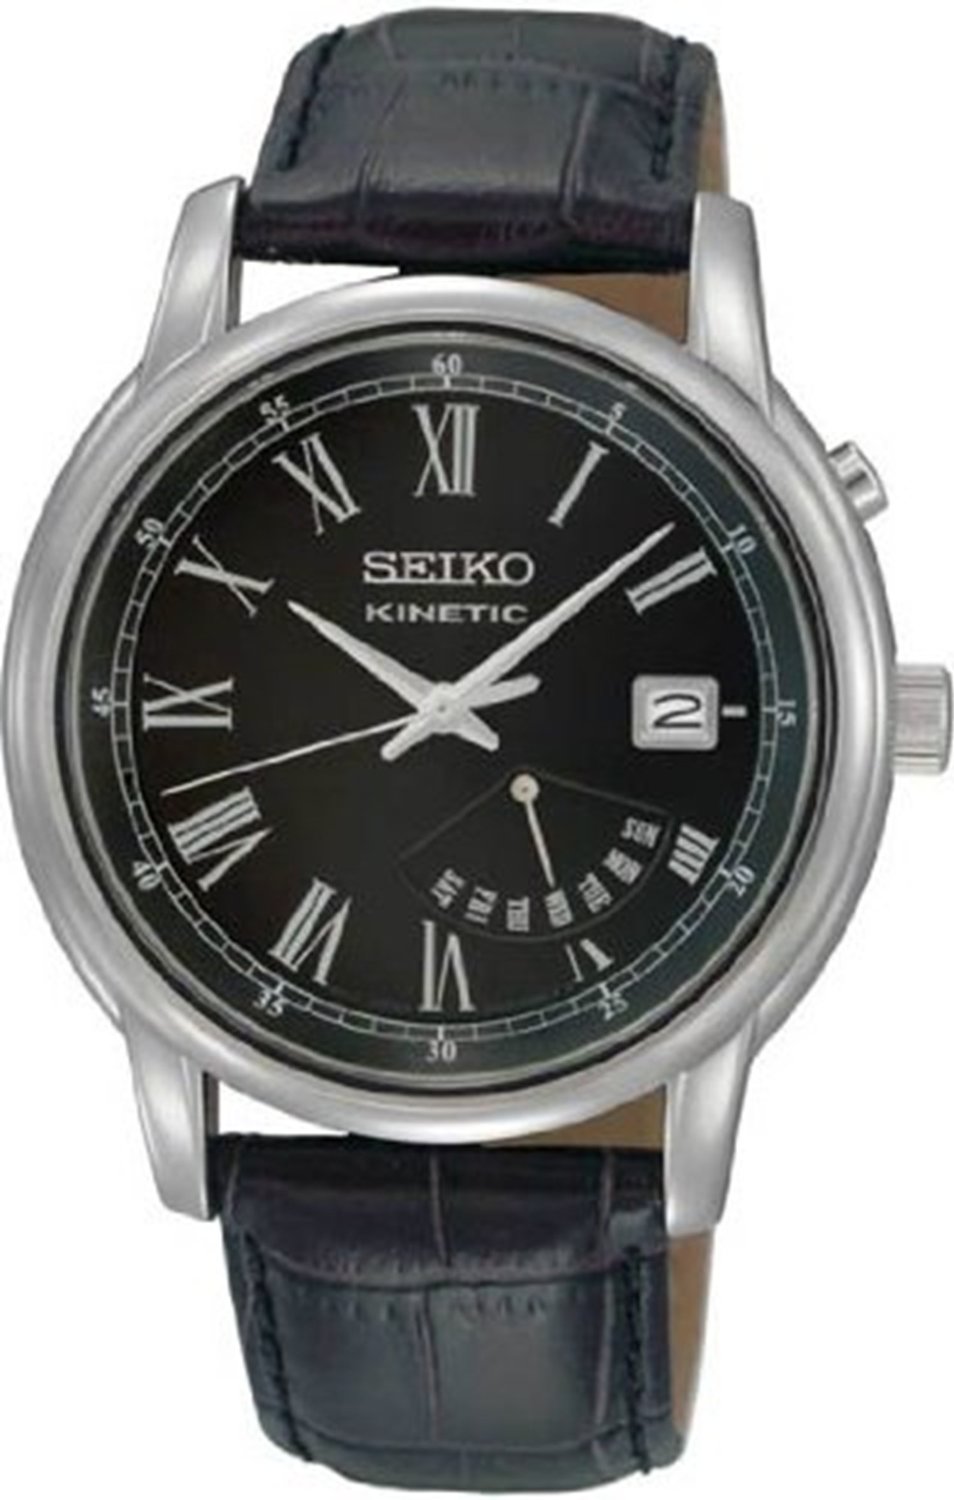 精工 Seiko SRN035 黑錶盤男表  $179.00